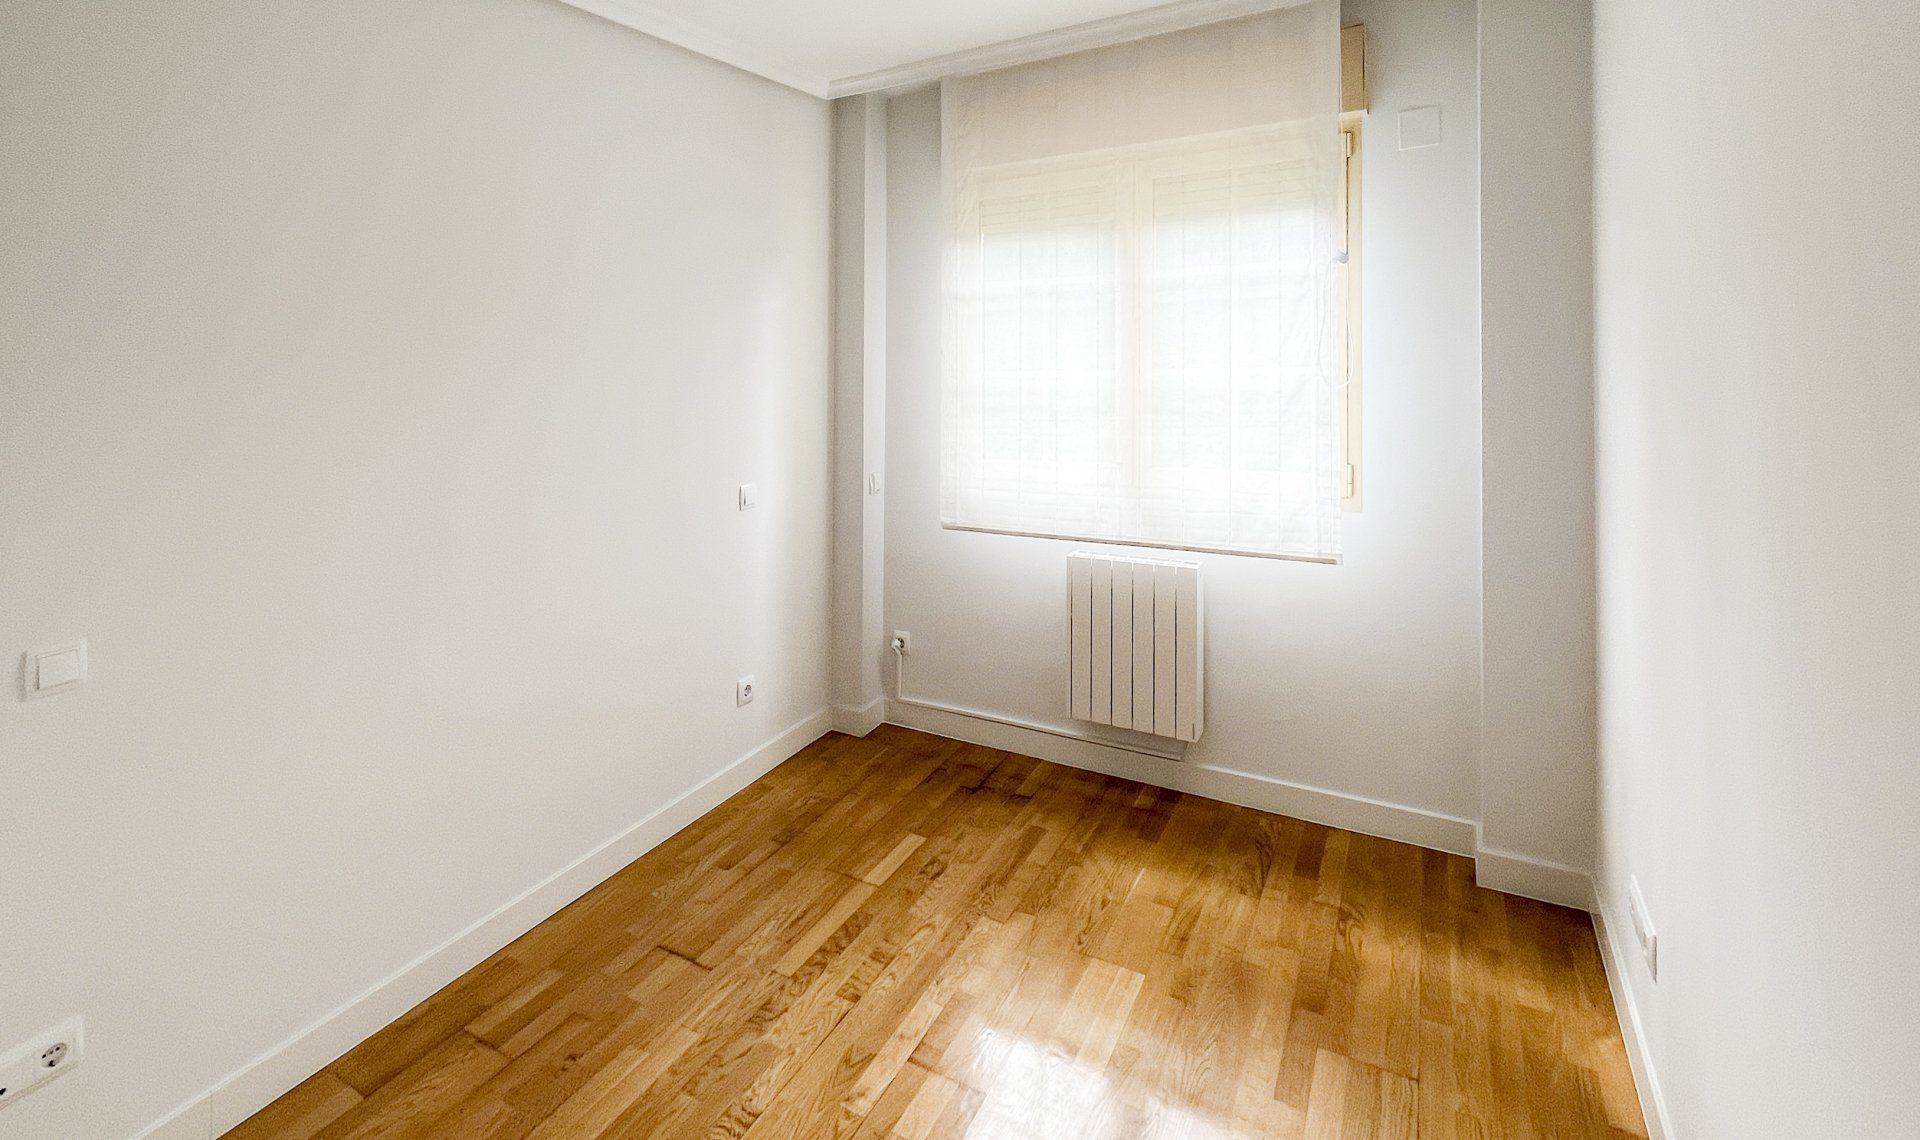 Una habitación vacía con suelos de madera y paredes blancas.